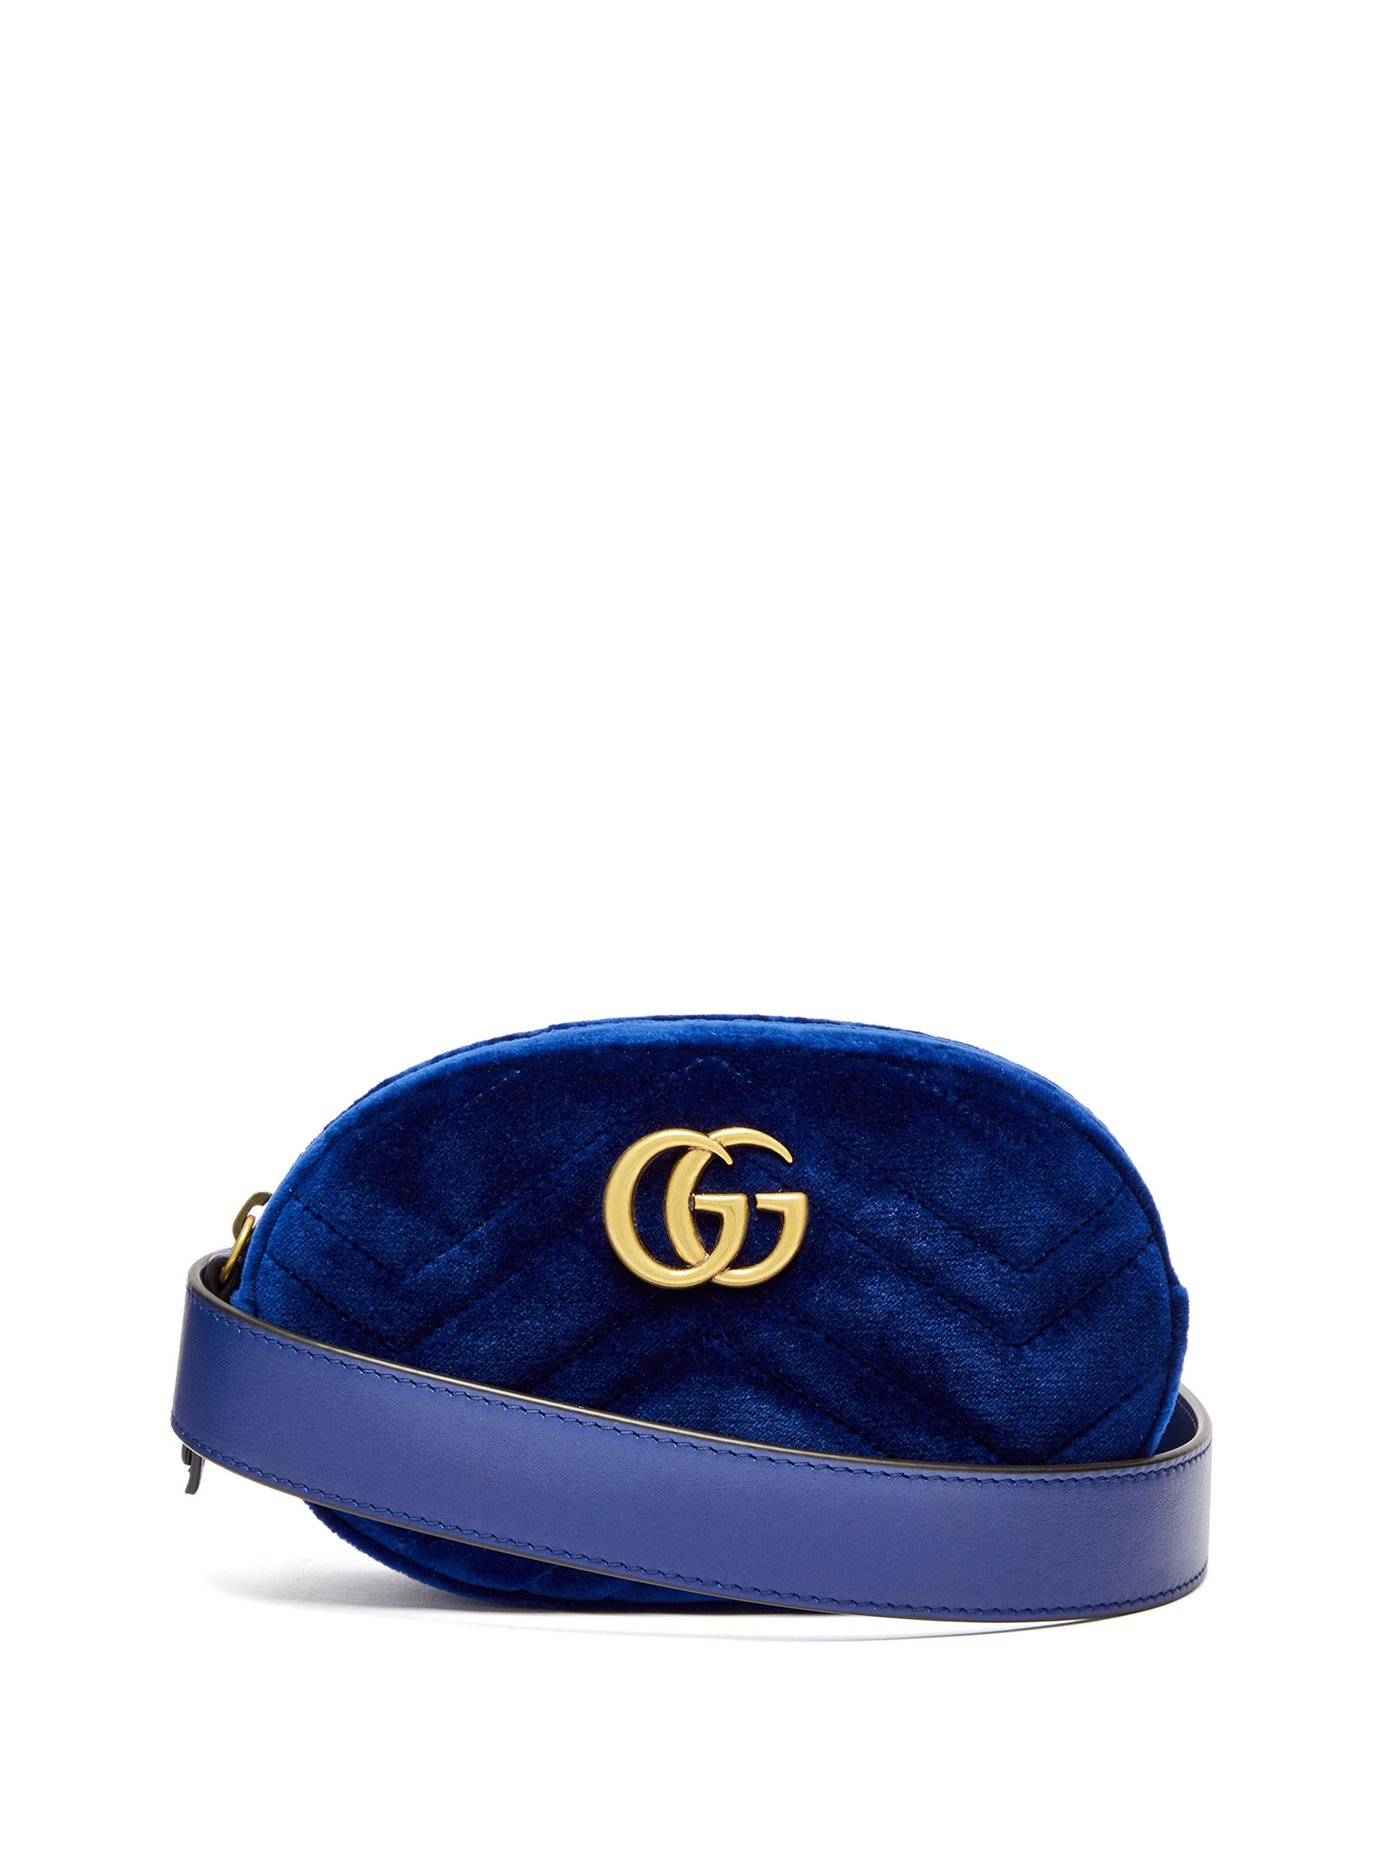 GG Marmont velvet belt bag | Gucci 